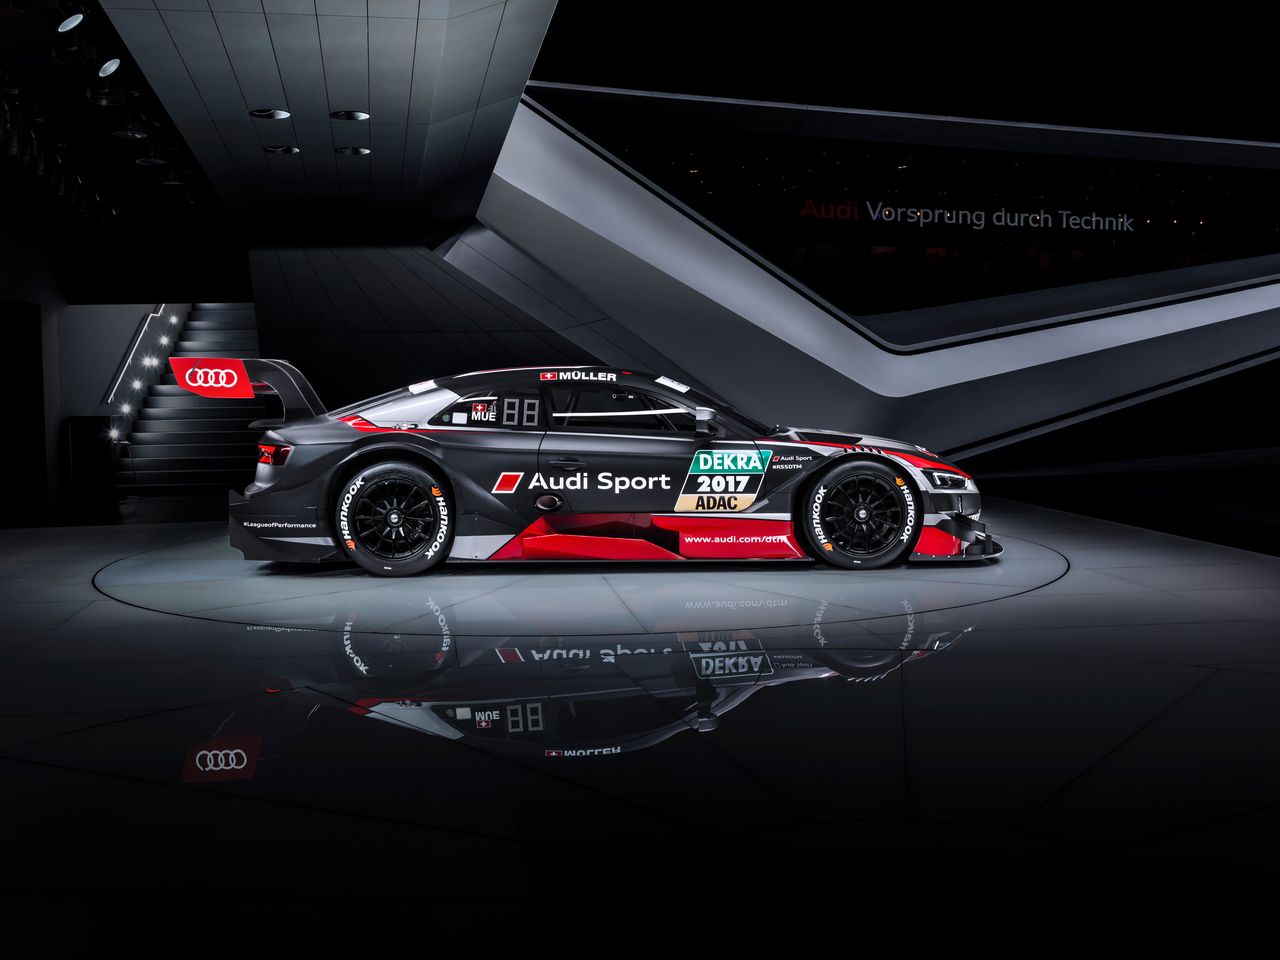 Audi po raz pierwszy opracowywało nowy model do niemieckiej serii DTM równolegle z samochodem produkcyjnym. Tym samym w Genewie mieliśmy obie premiery. Zespół ma na koncie mistrzostwo dla producenta zdobyte w minionym sezonie i w tym roku chciałby powalczyć również o najwyższe laury w klasyfikacji kierowców. Miniony rok ich reprezentant Edoardo Mortara zakończył sezon na drugim miejscu ze stratą ledwie 4 punktów do zwycięzcy, Marco Wittmanna z BMW.